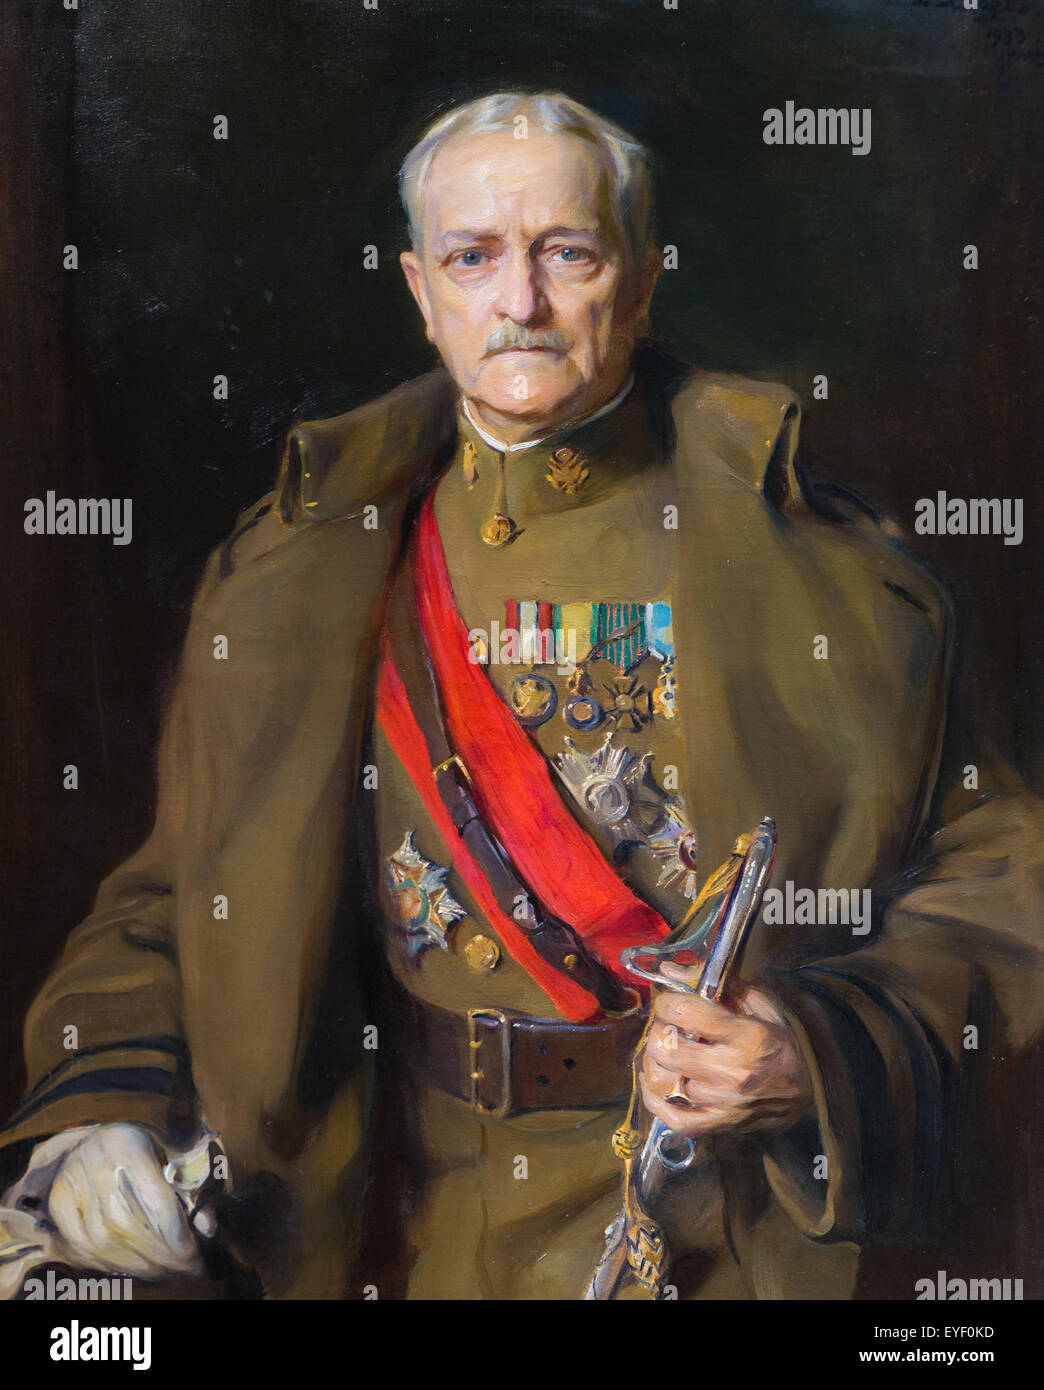 General Pershing 12.07.2013 - Sammlung des 20. Jahrhunderts Stockfoto